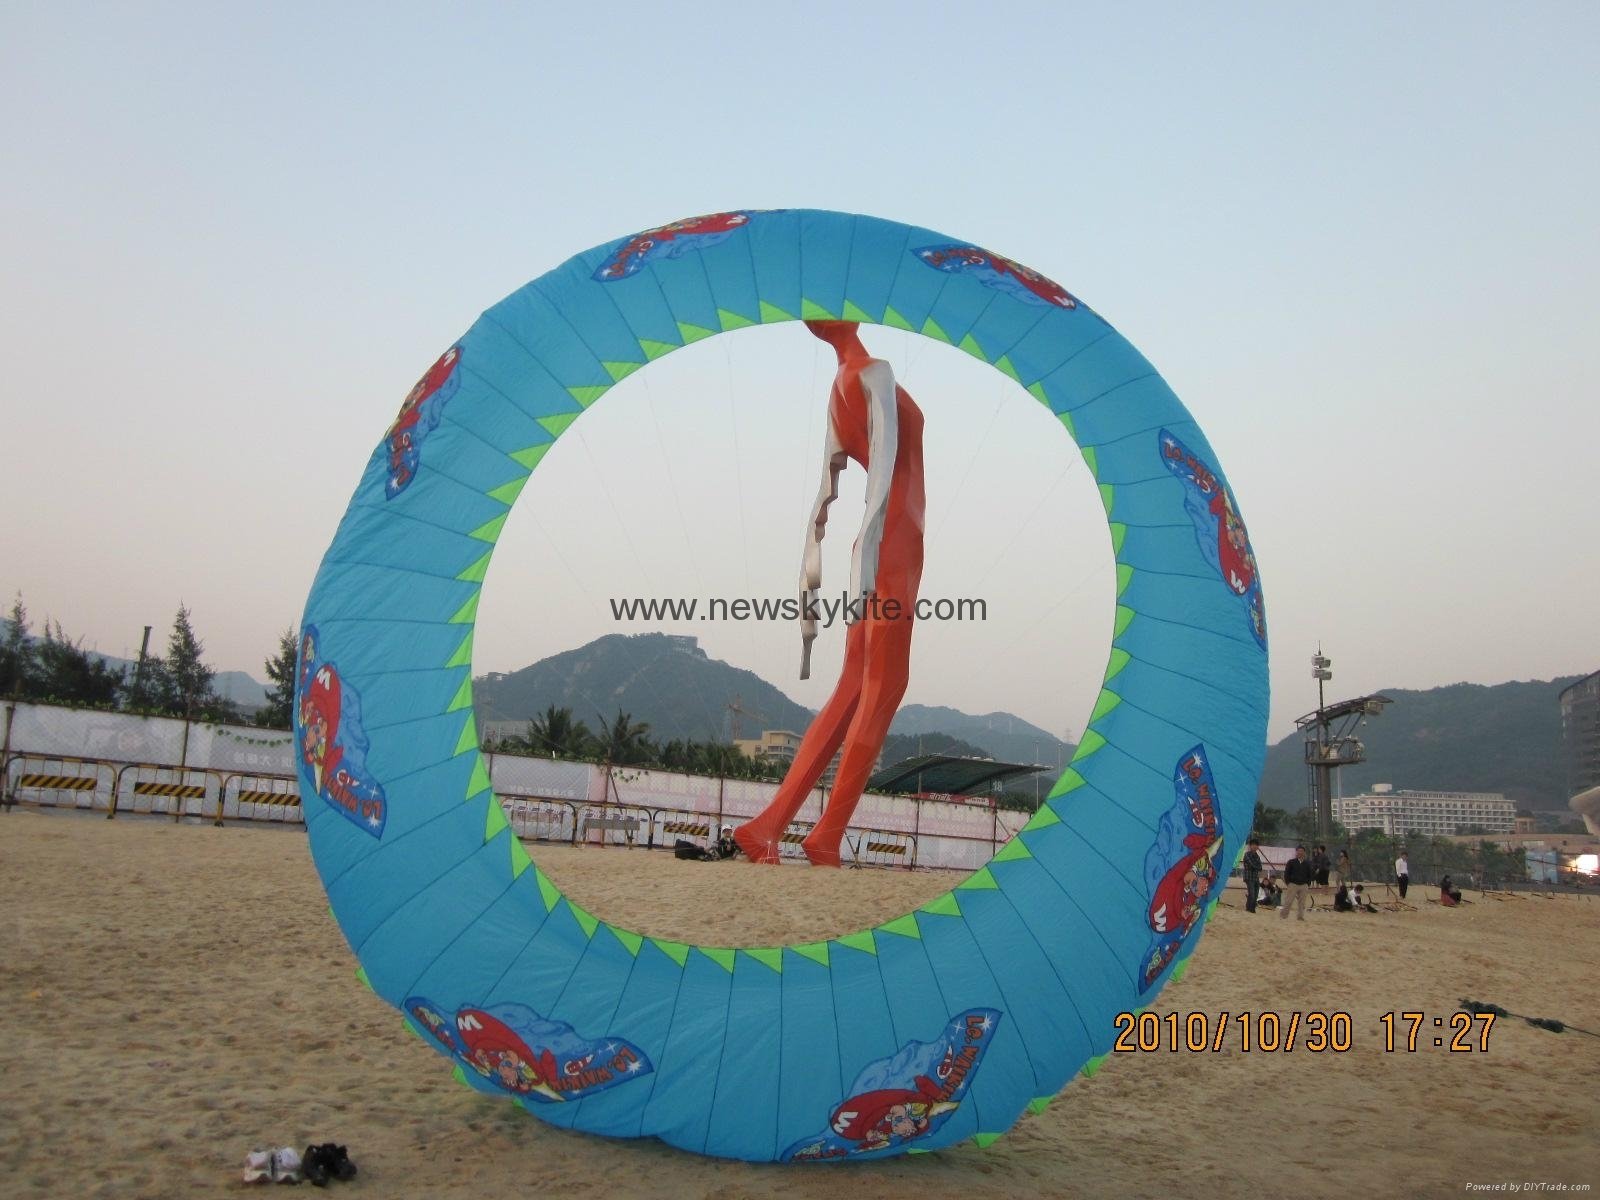 Ring kite for advertising